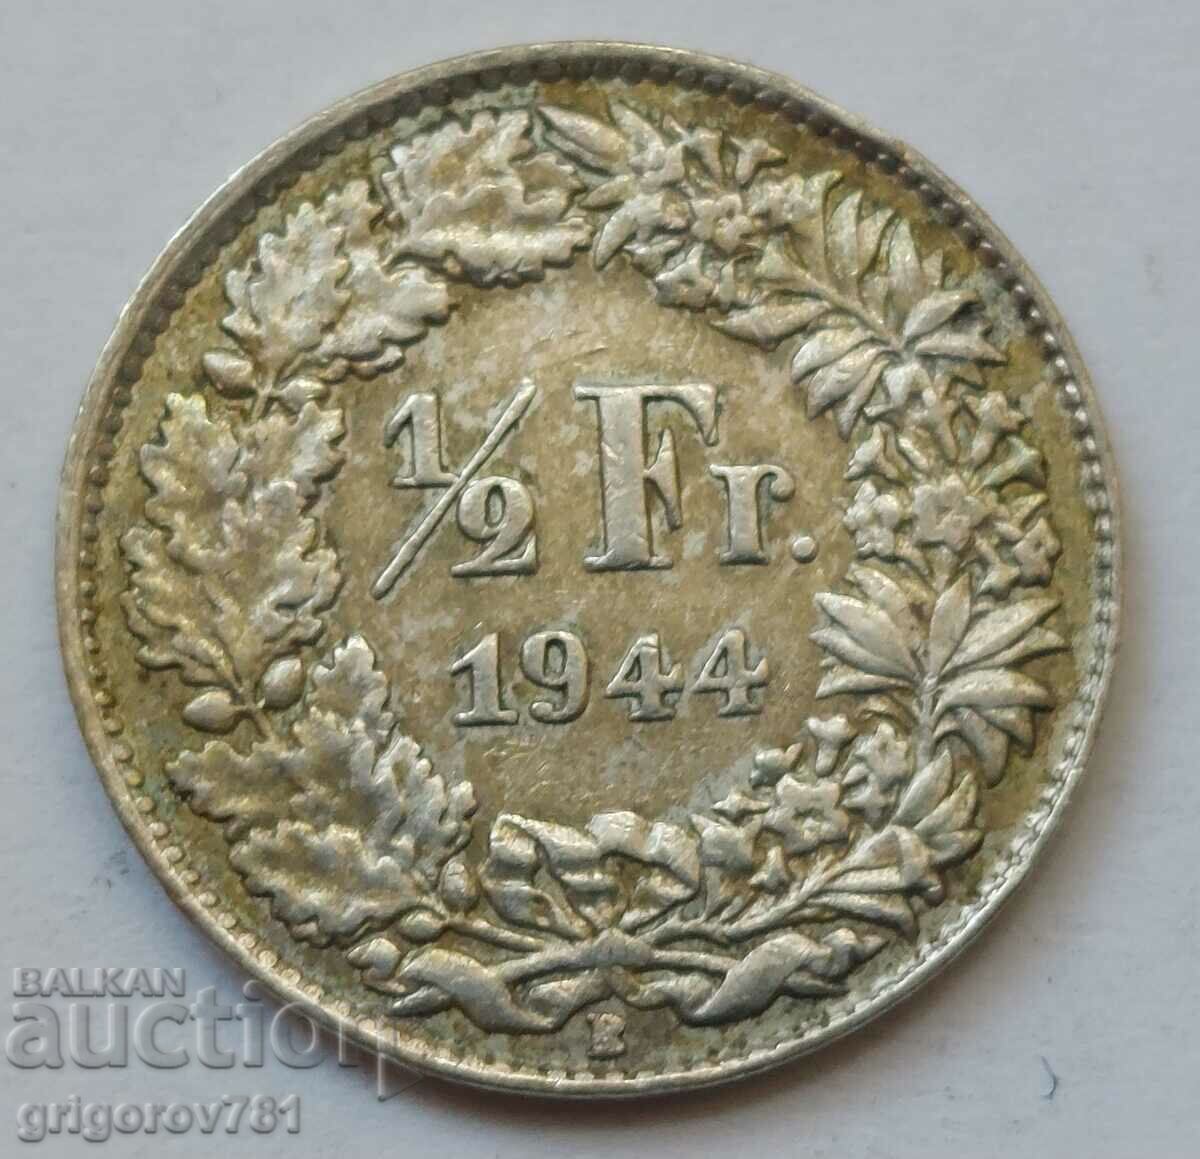 Ασημένιο φράγκο 1/2 Ελβετία 1944 Β - Ασημένιο νόμισμα #177